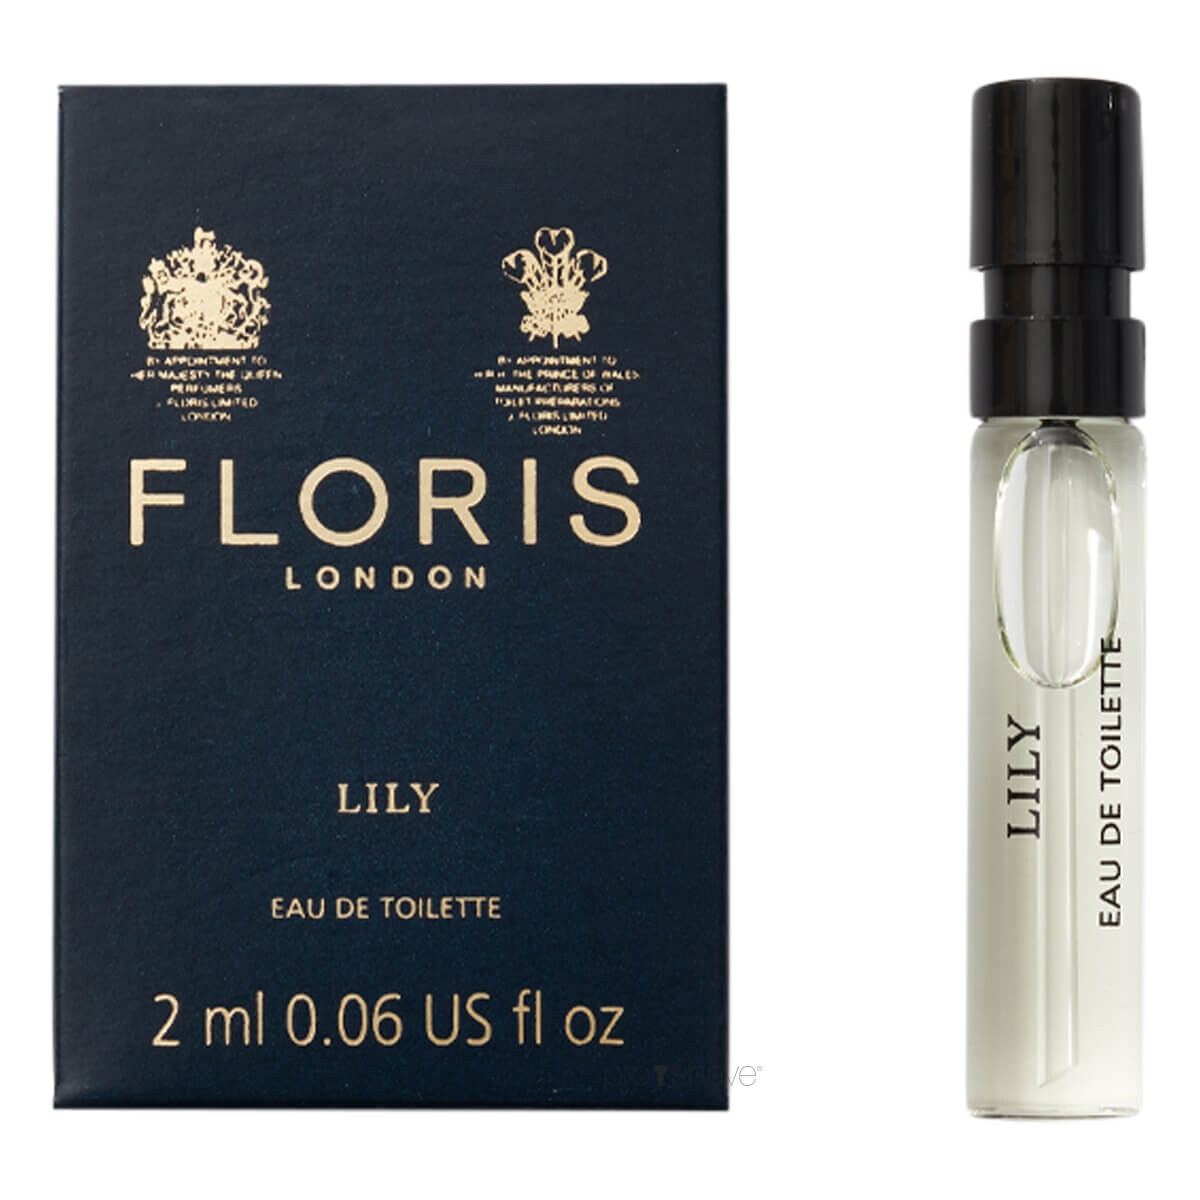 14: Floris Lily, Eau de Toilette, DUFTPRØVE, 2 ml.